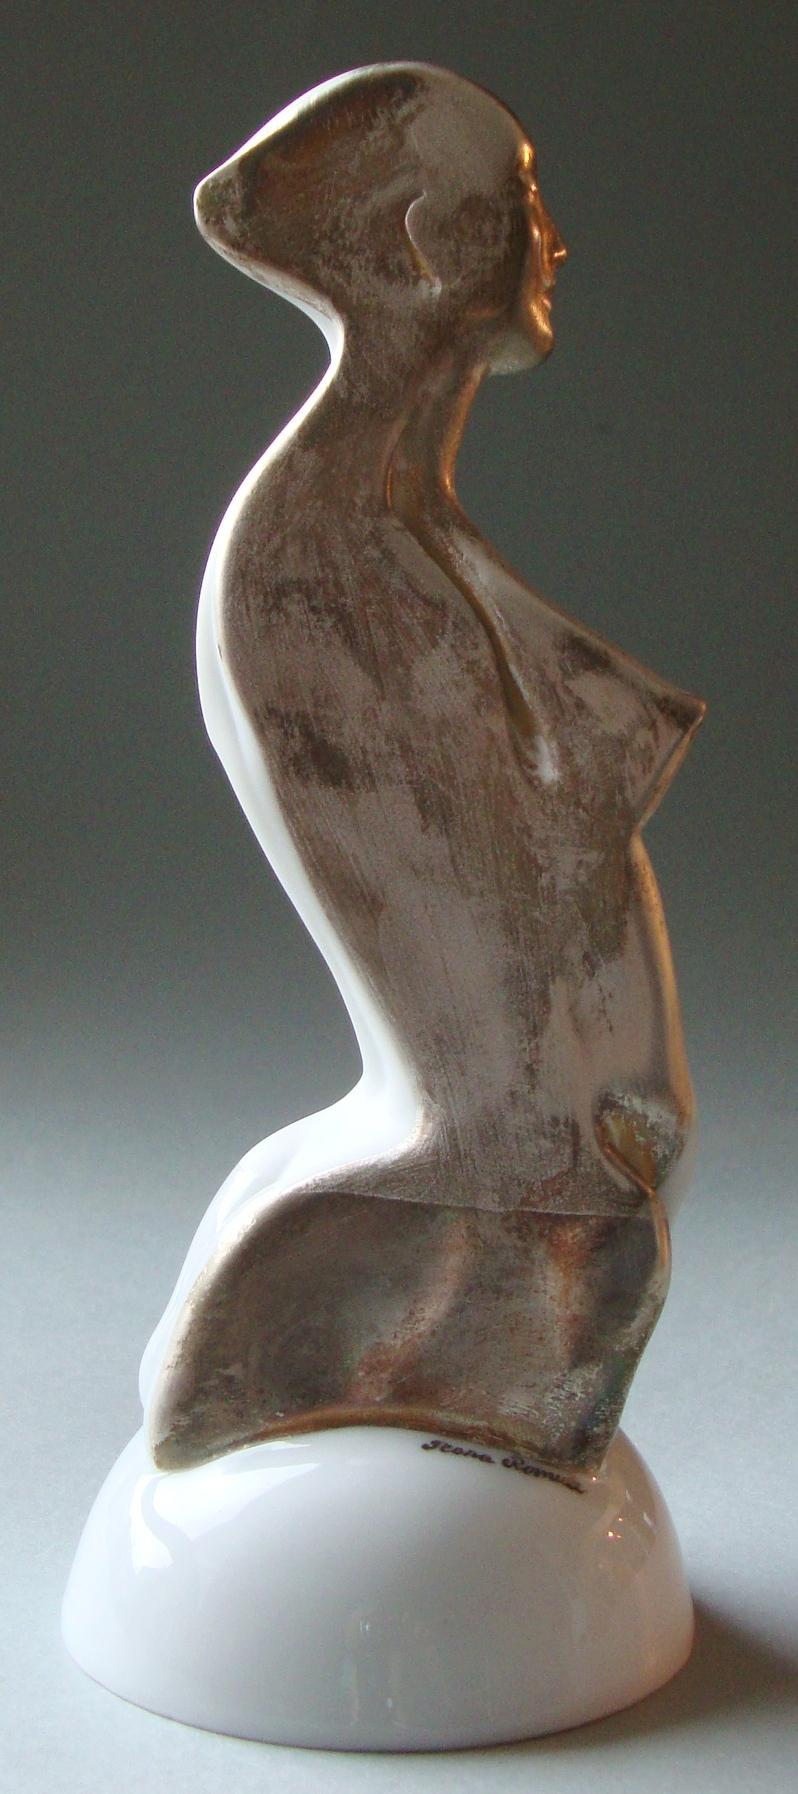 Women figure on a pedestal  Porcelain, silver, h 20 cm - Contemporary Sculpture by Ilona Romule